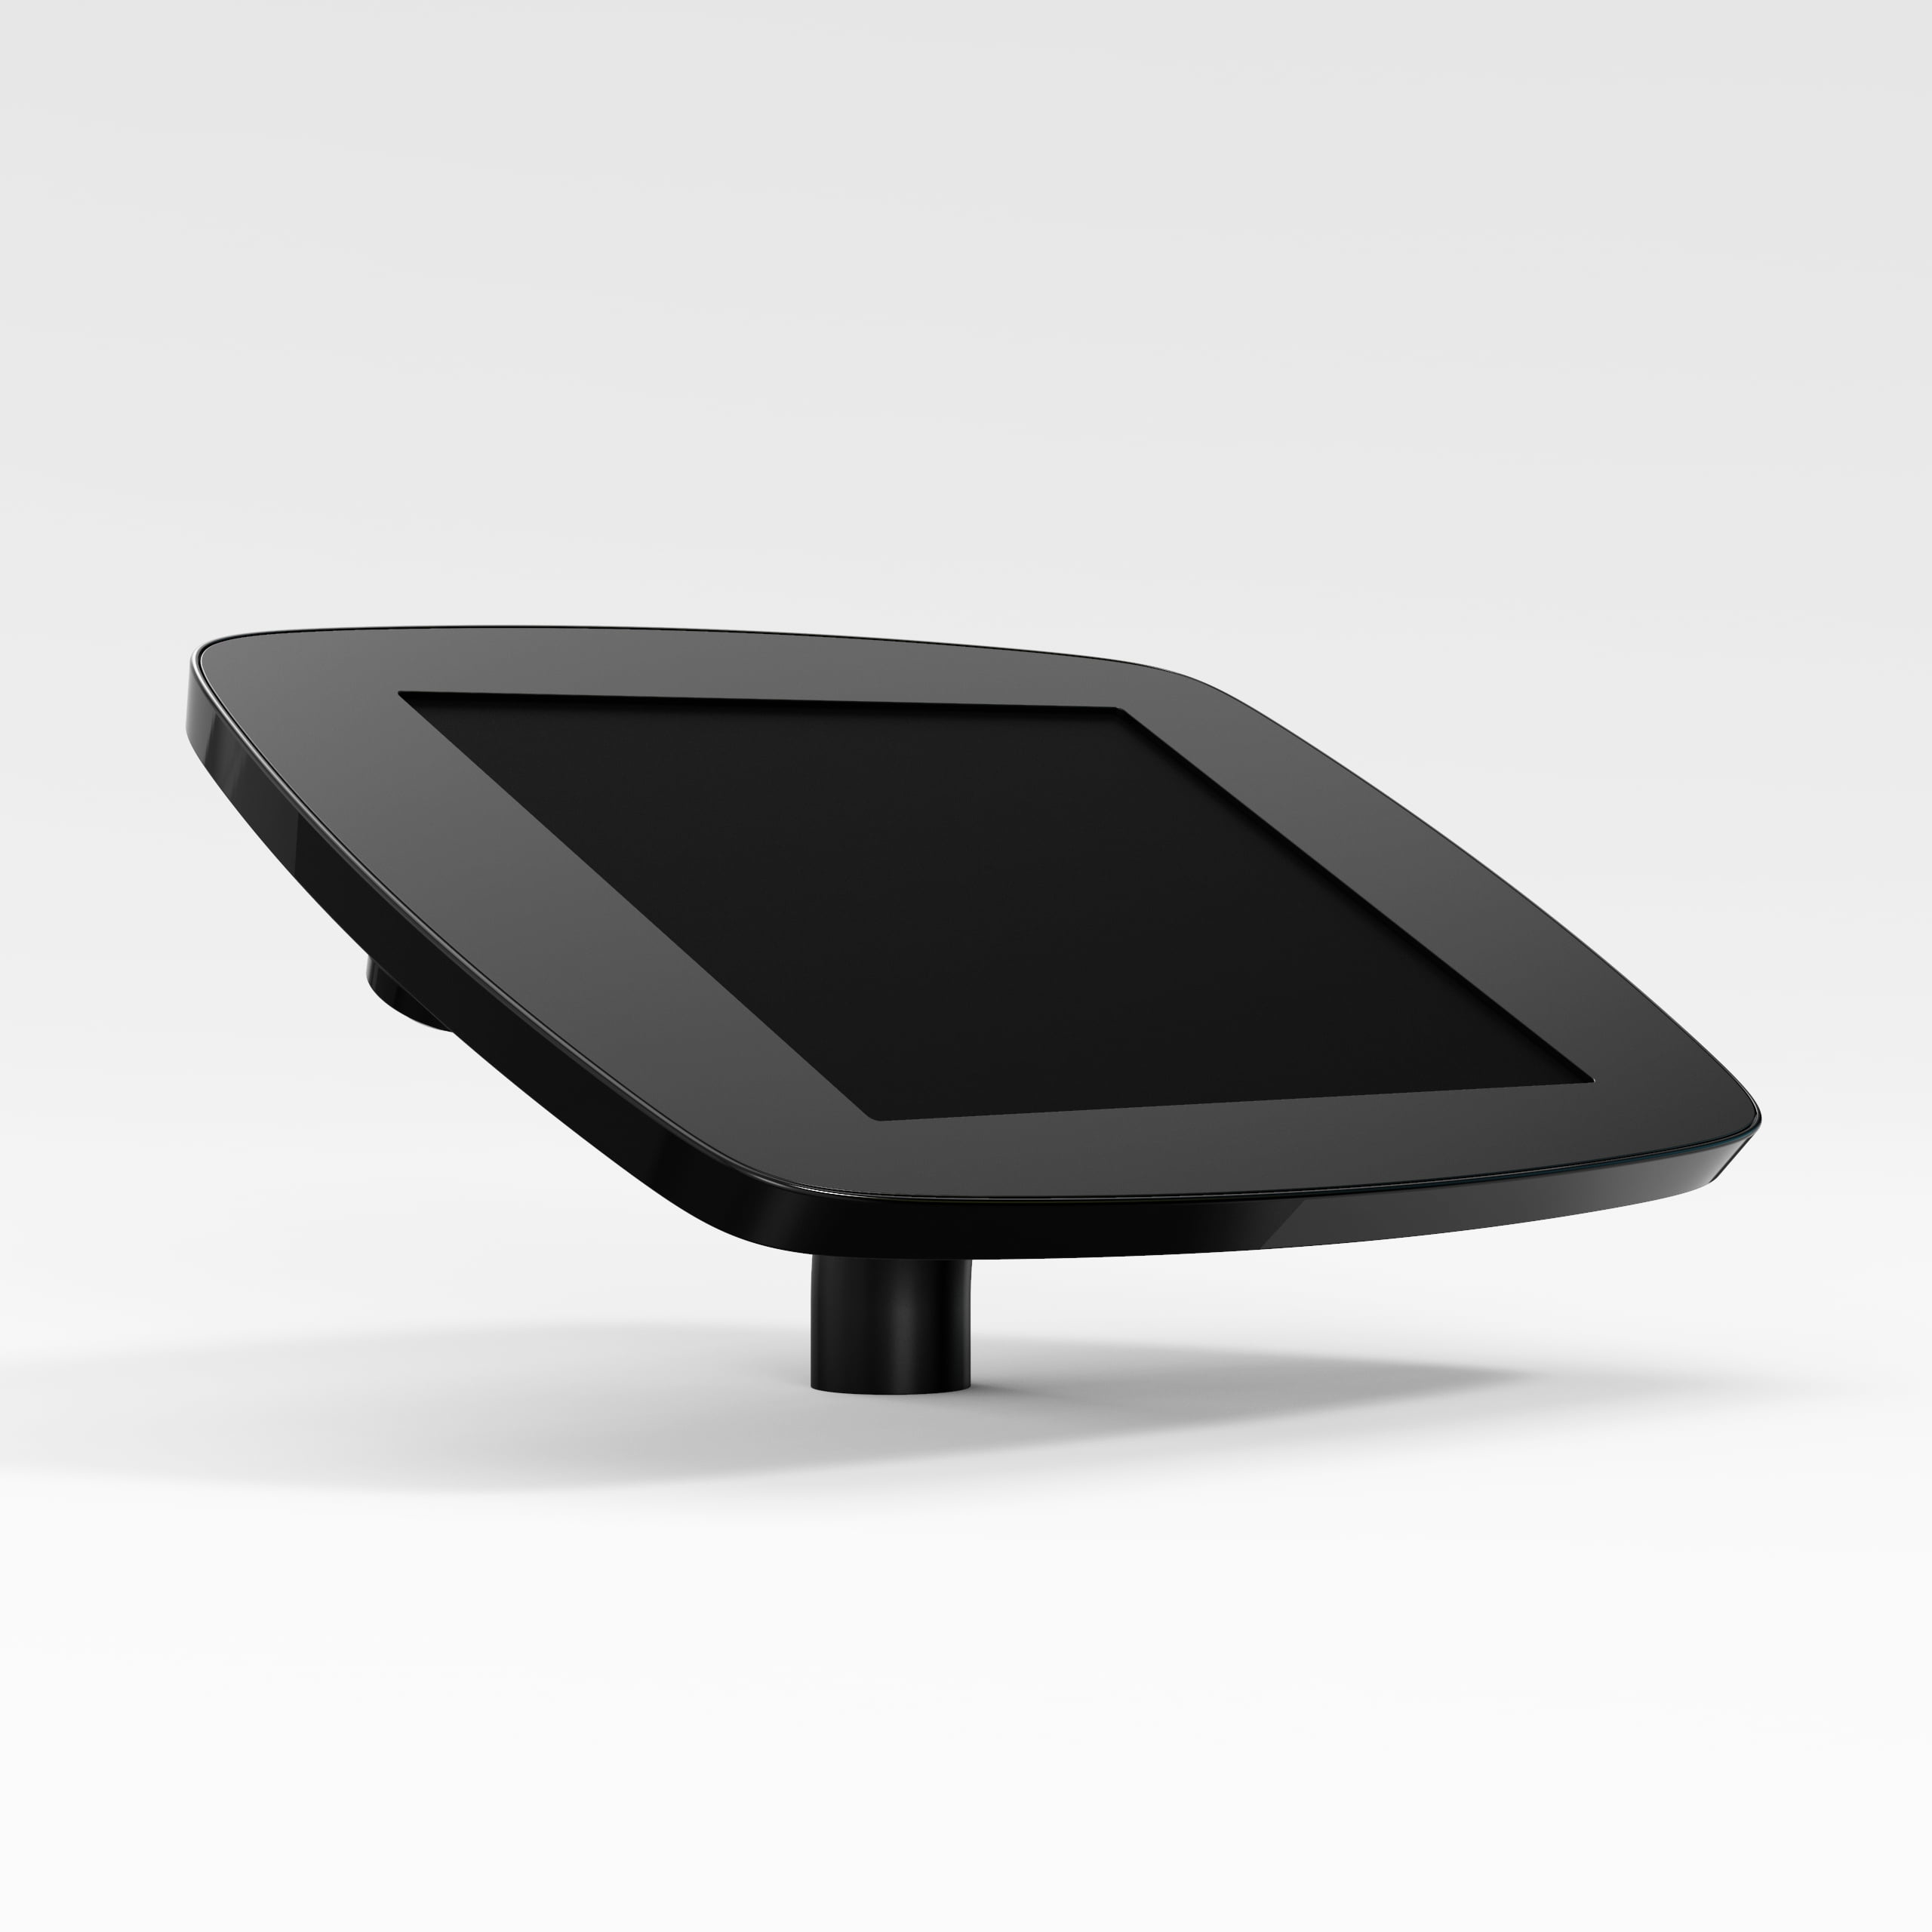 Bouncepad Desk supporto antifurto per tablet 25,4 cm [10] Nero (DESKBLKOPENCAM/OPENHOME SG)